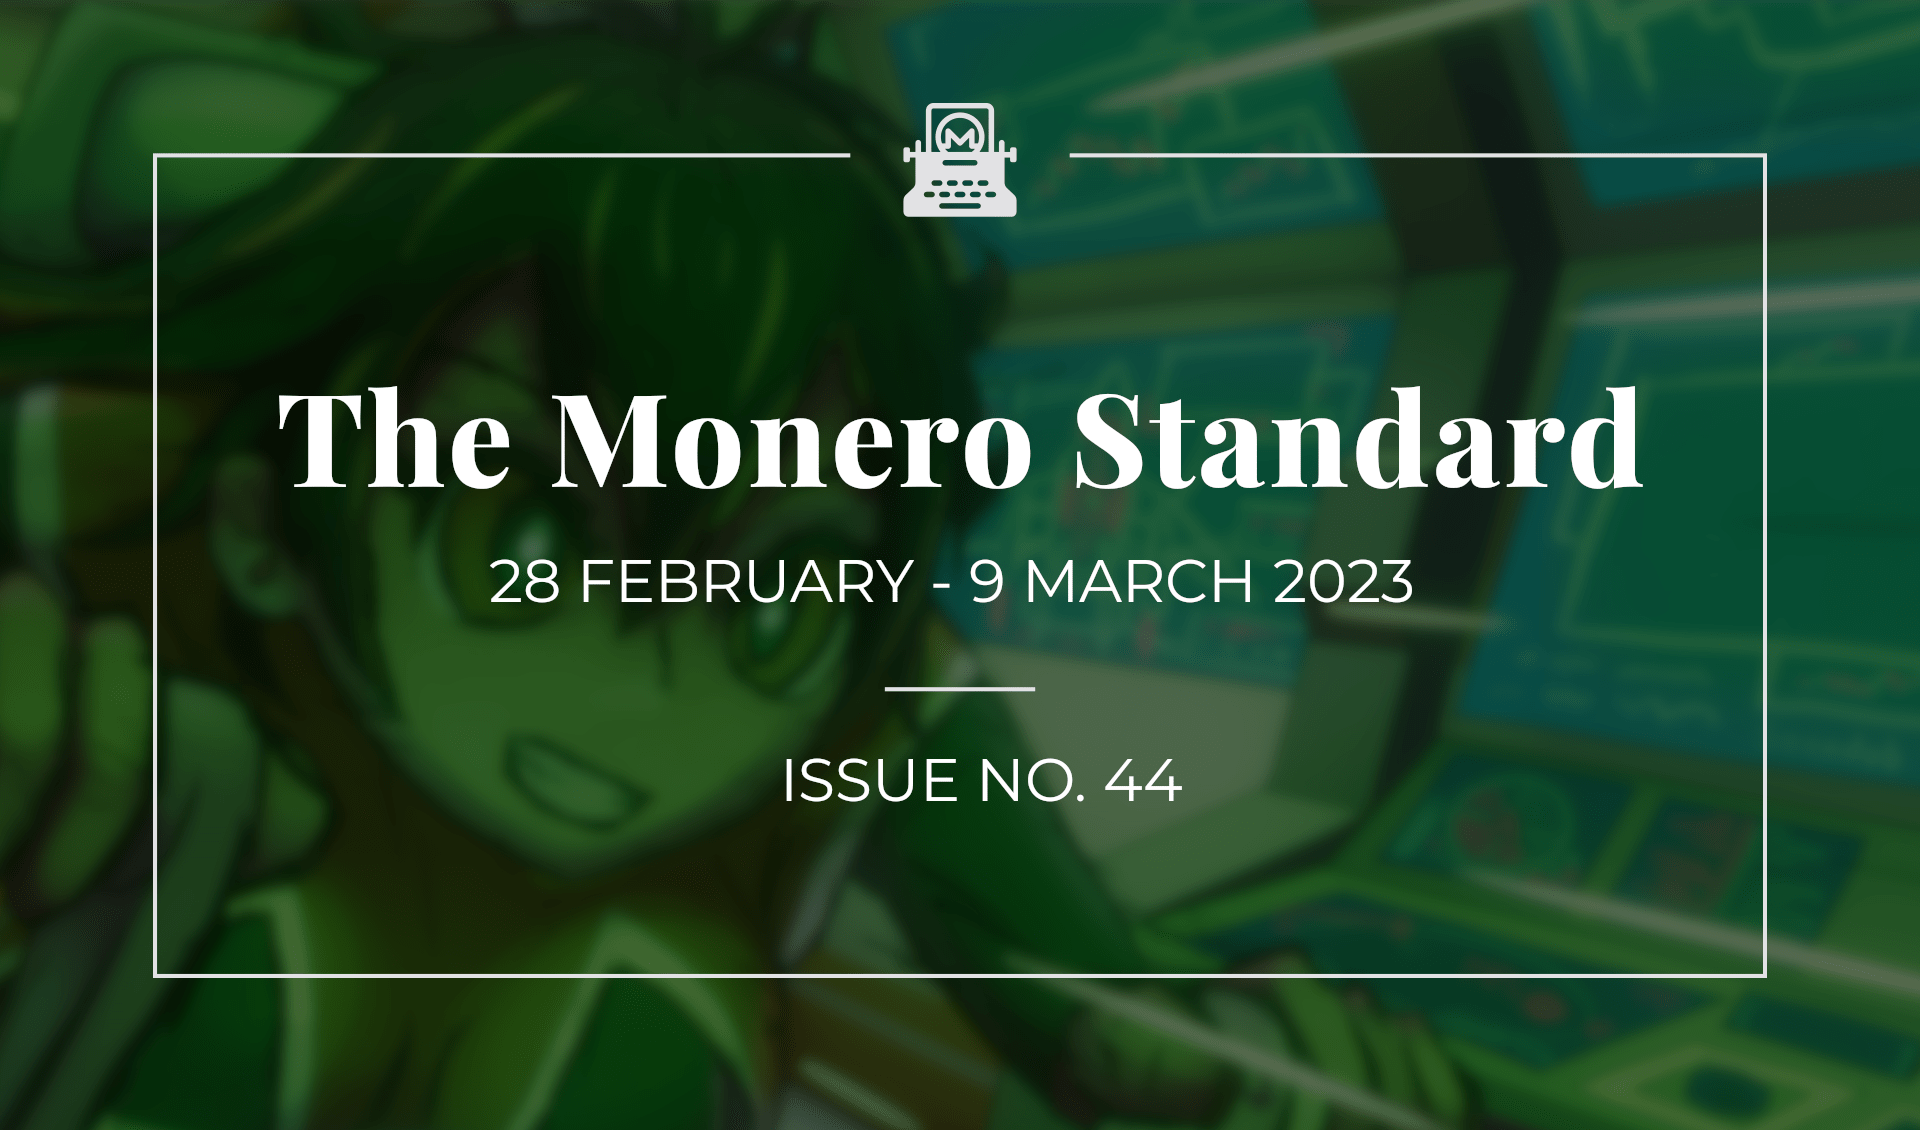 The Monero Standard #44: 28 February 2023 - 9 March 2023